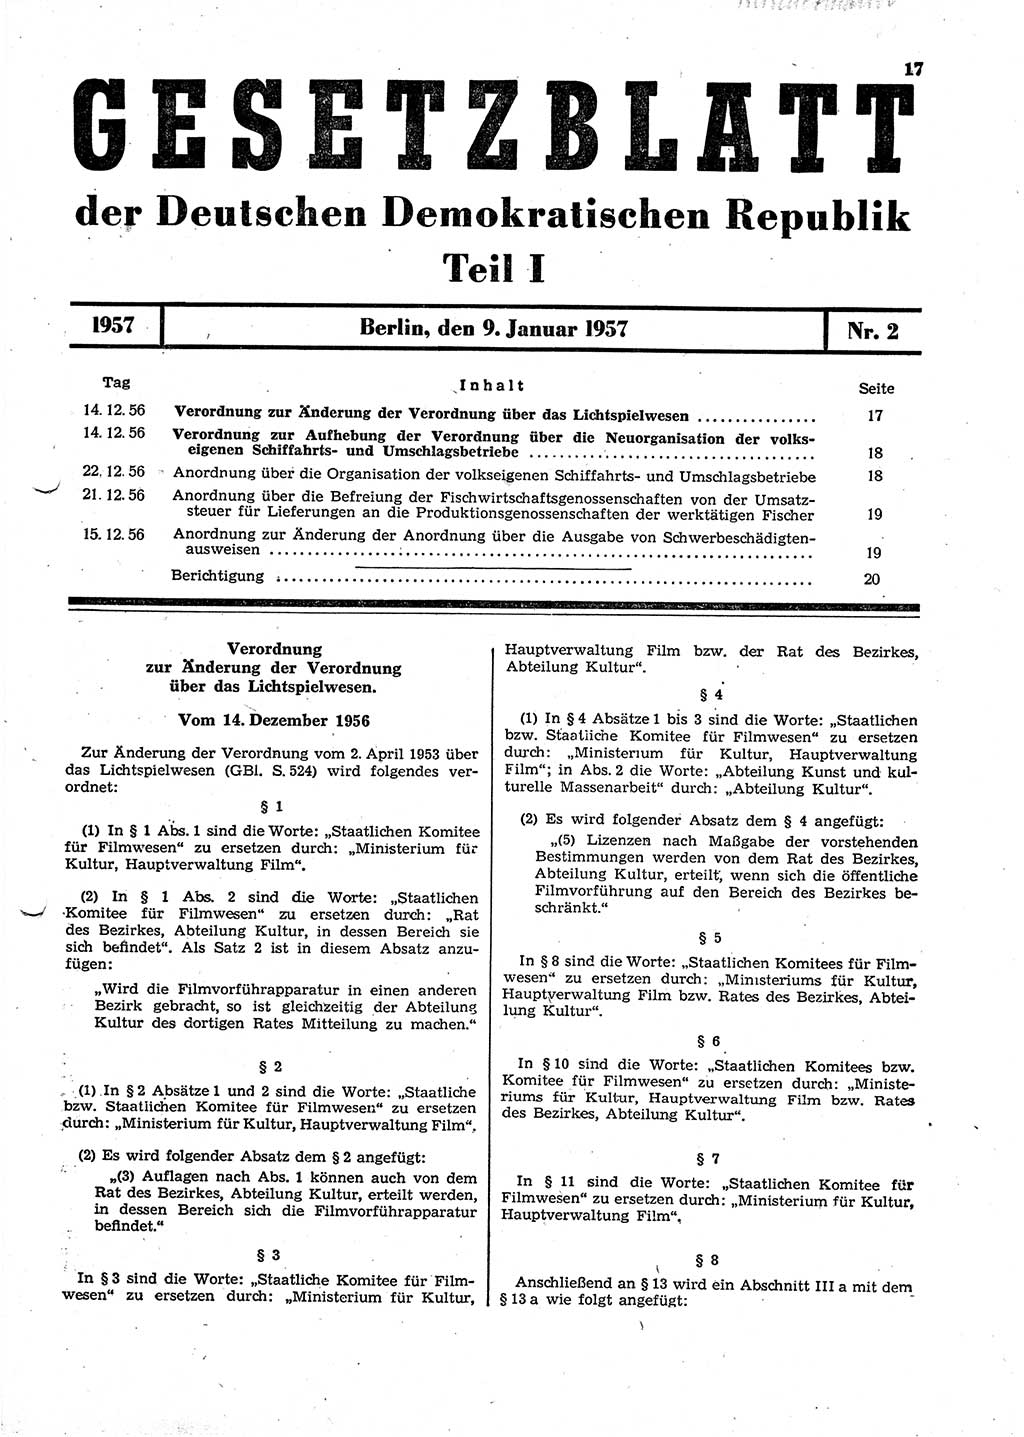 Gesetzblatt (GBl.) der Deutschen Demokratischen Republik (DDR) Teil Ⅰ 1957, Seite 17 (GBl. DDR Ⅰ 1957, S. 17)